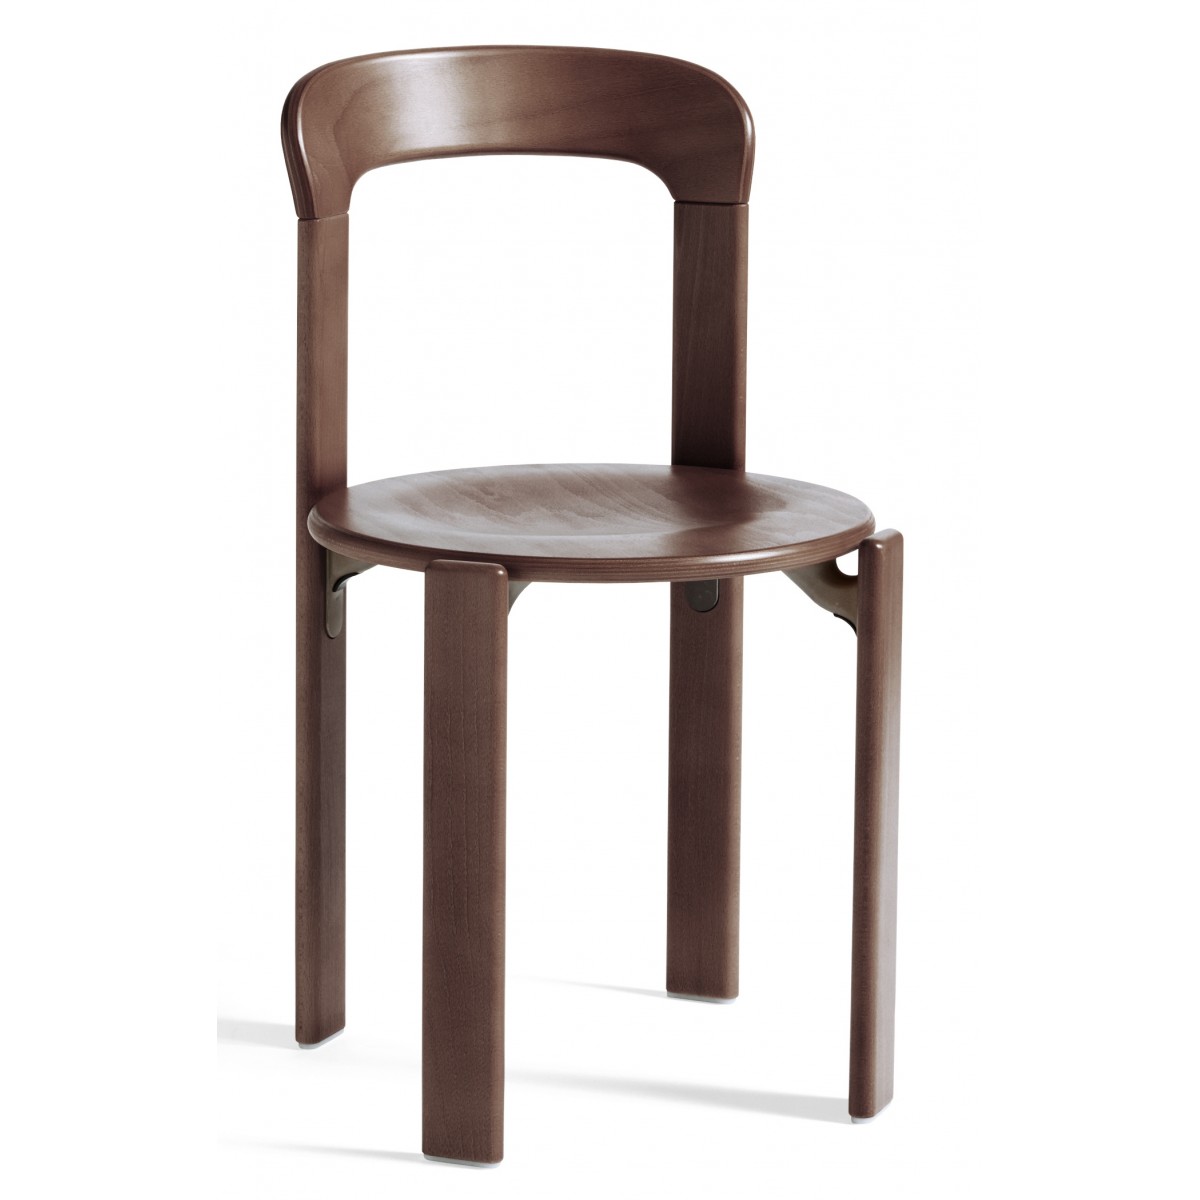 Umber brown - REY chair